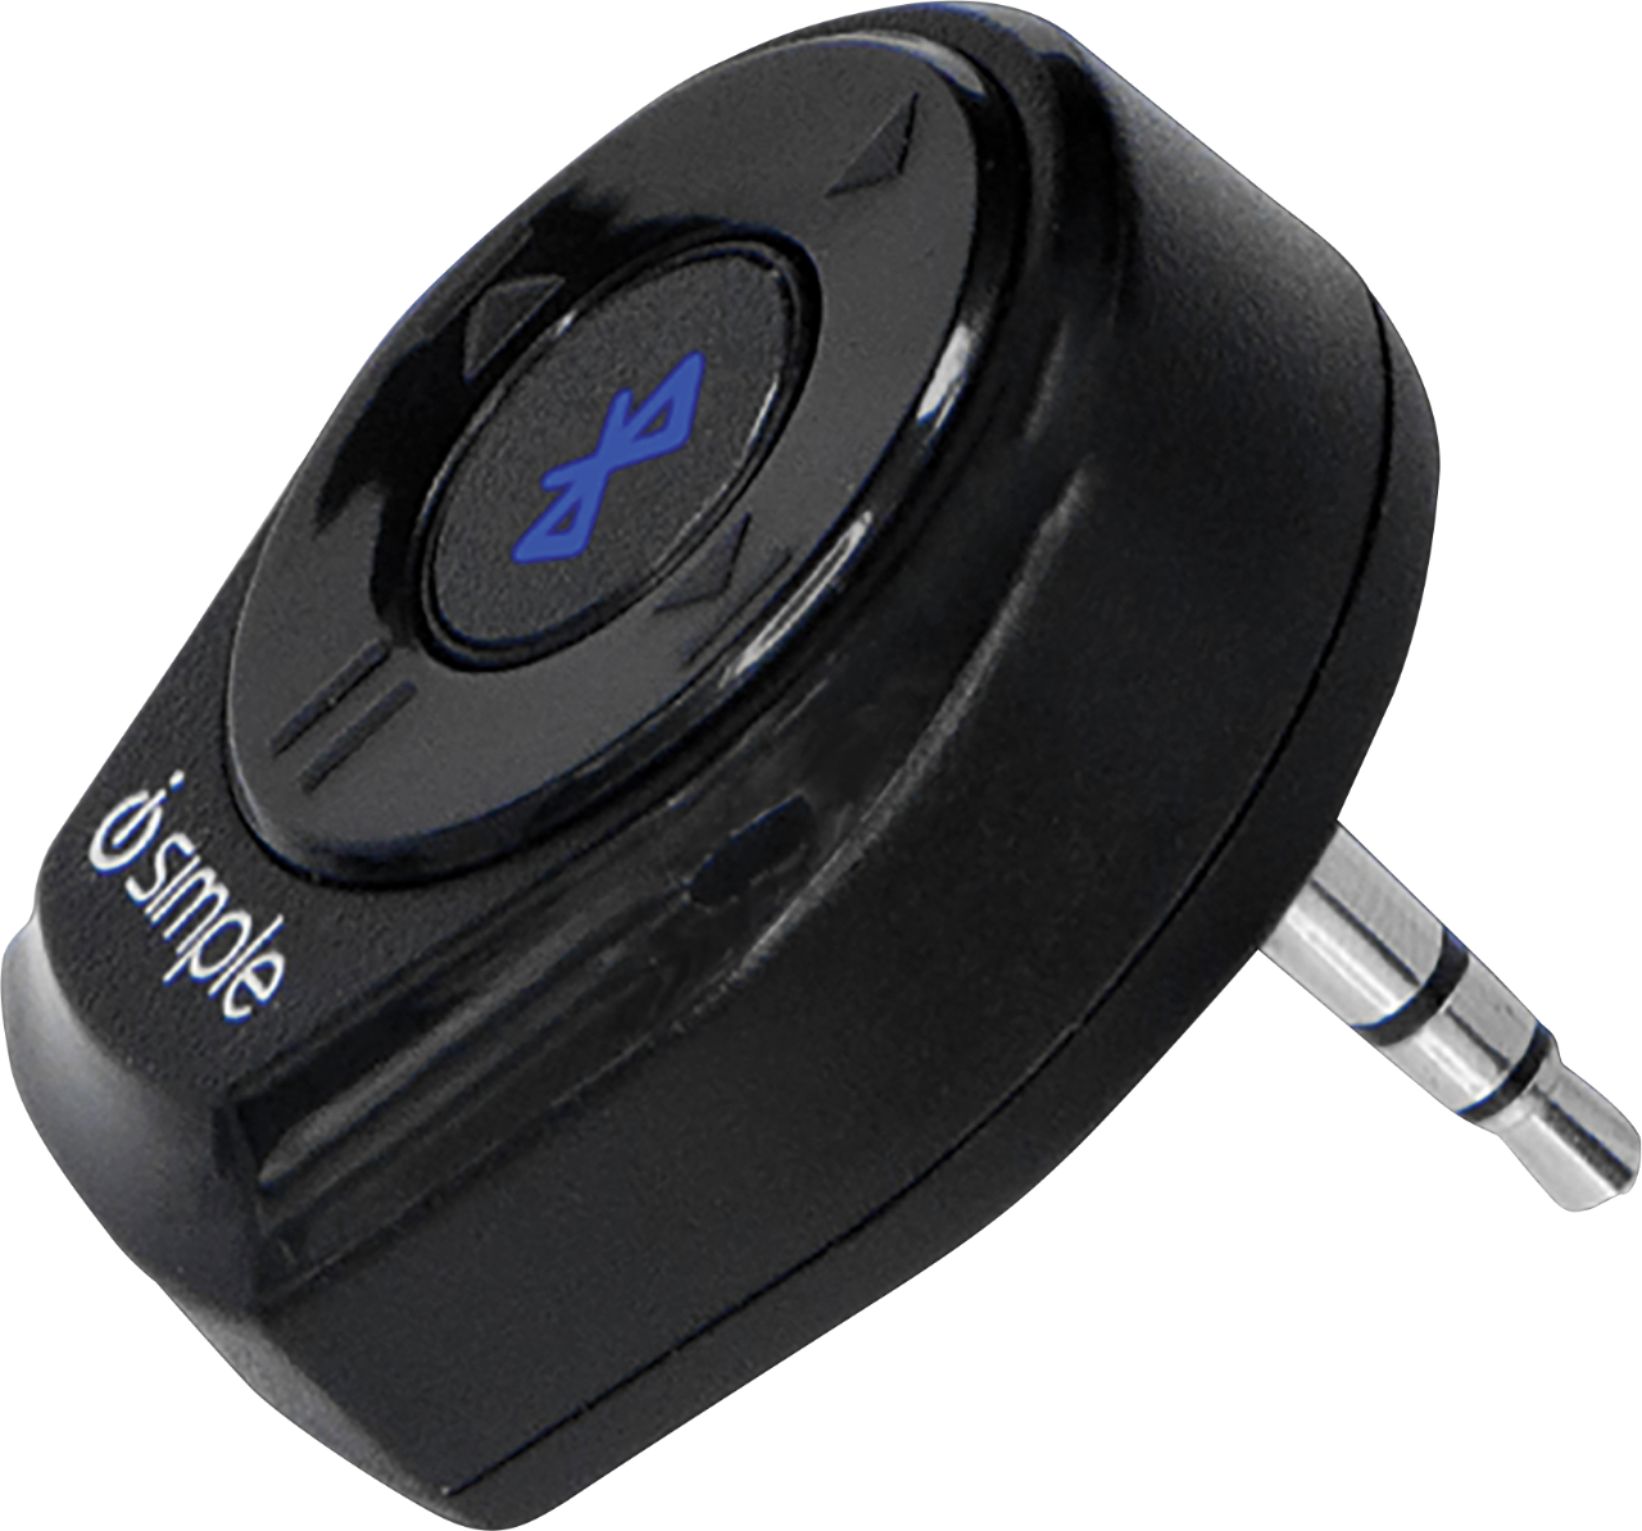 iSimple BTS320 Vehicle Bluetooth Adapter - Black